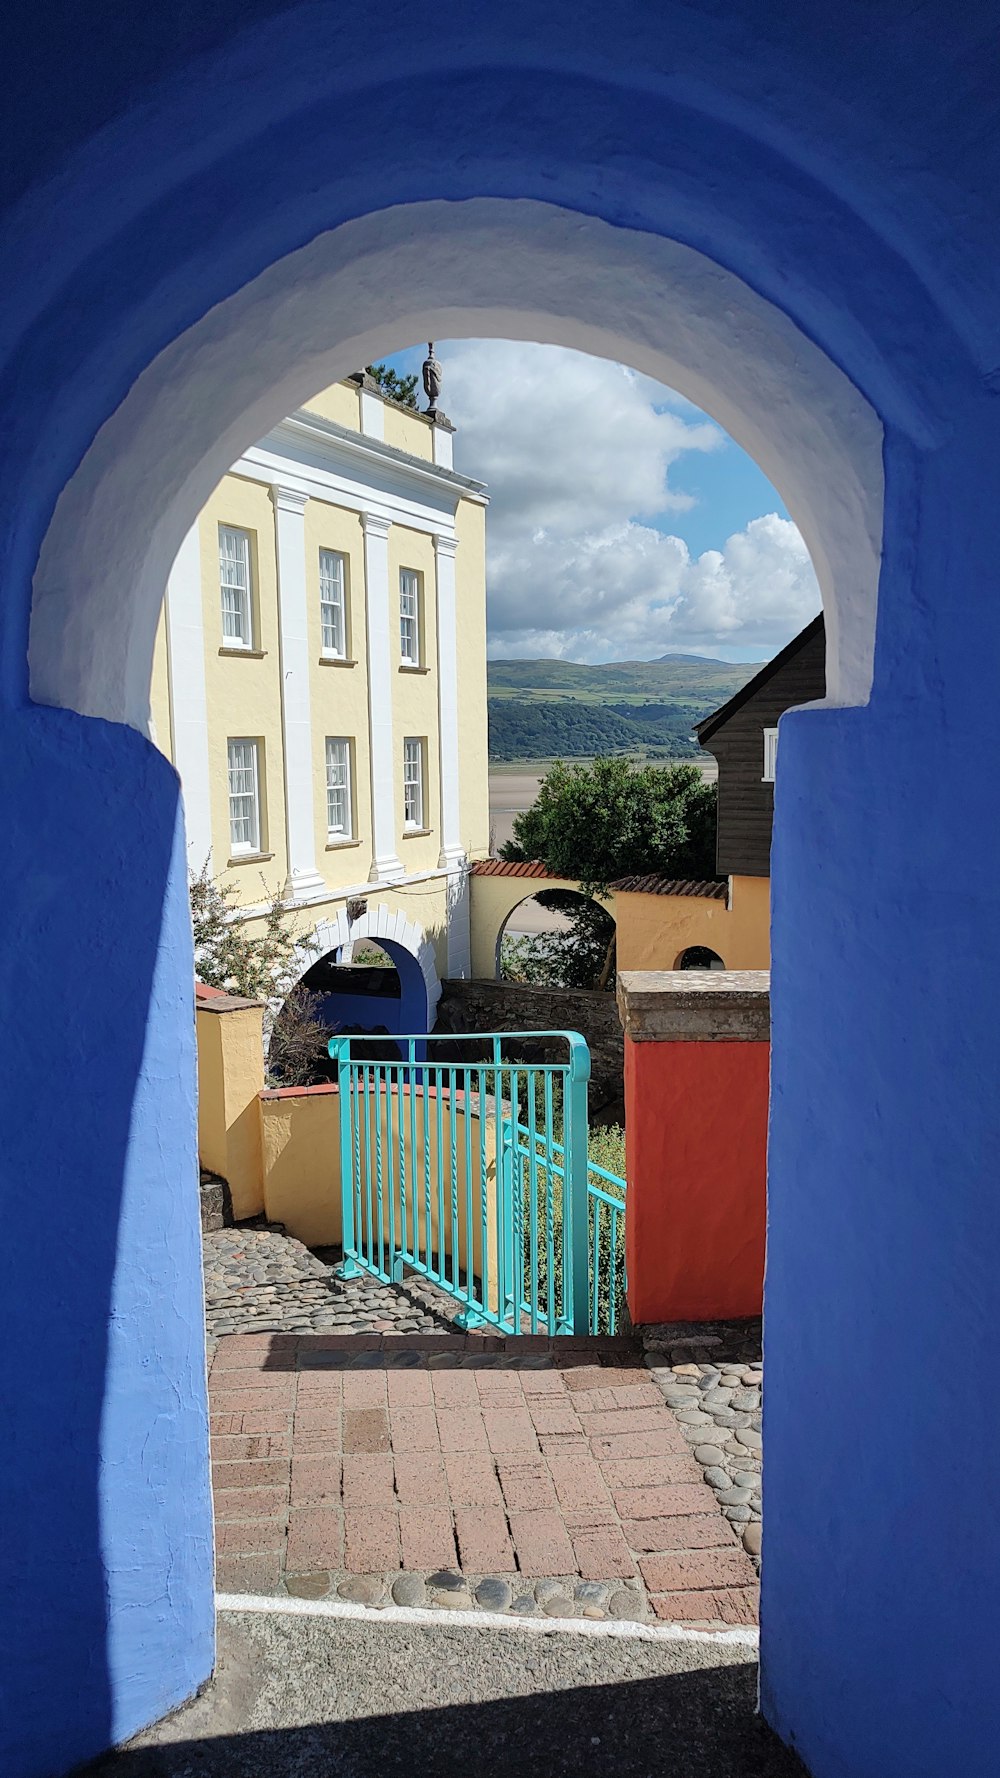 a blue gate in a stone building